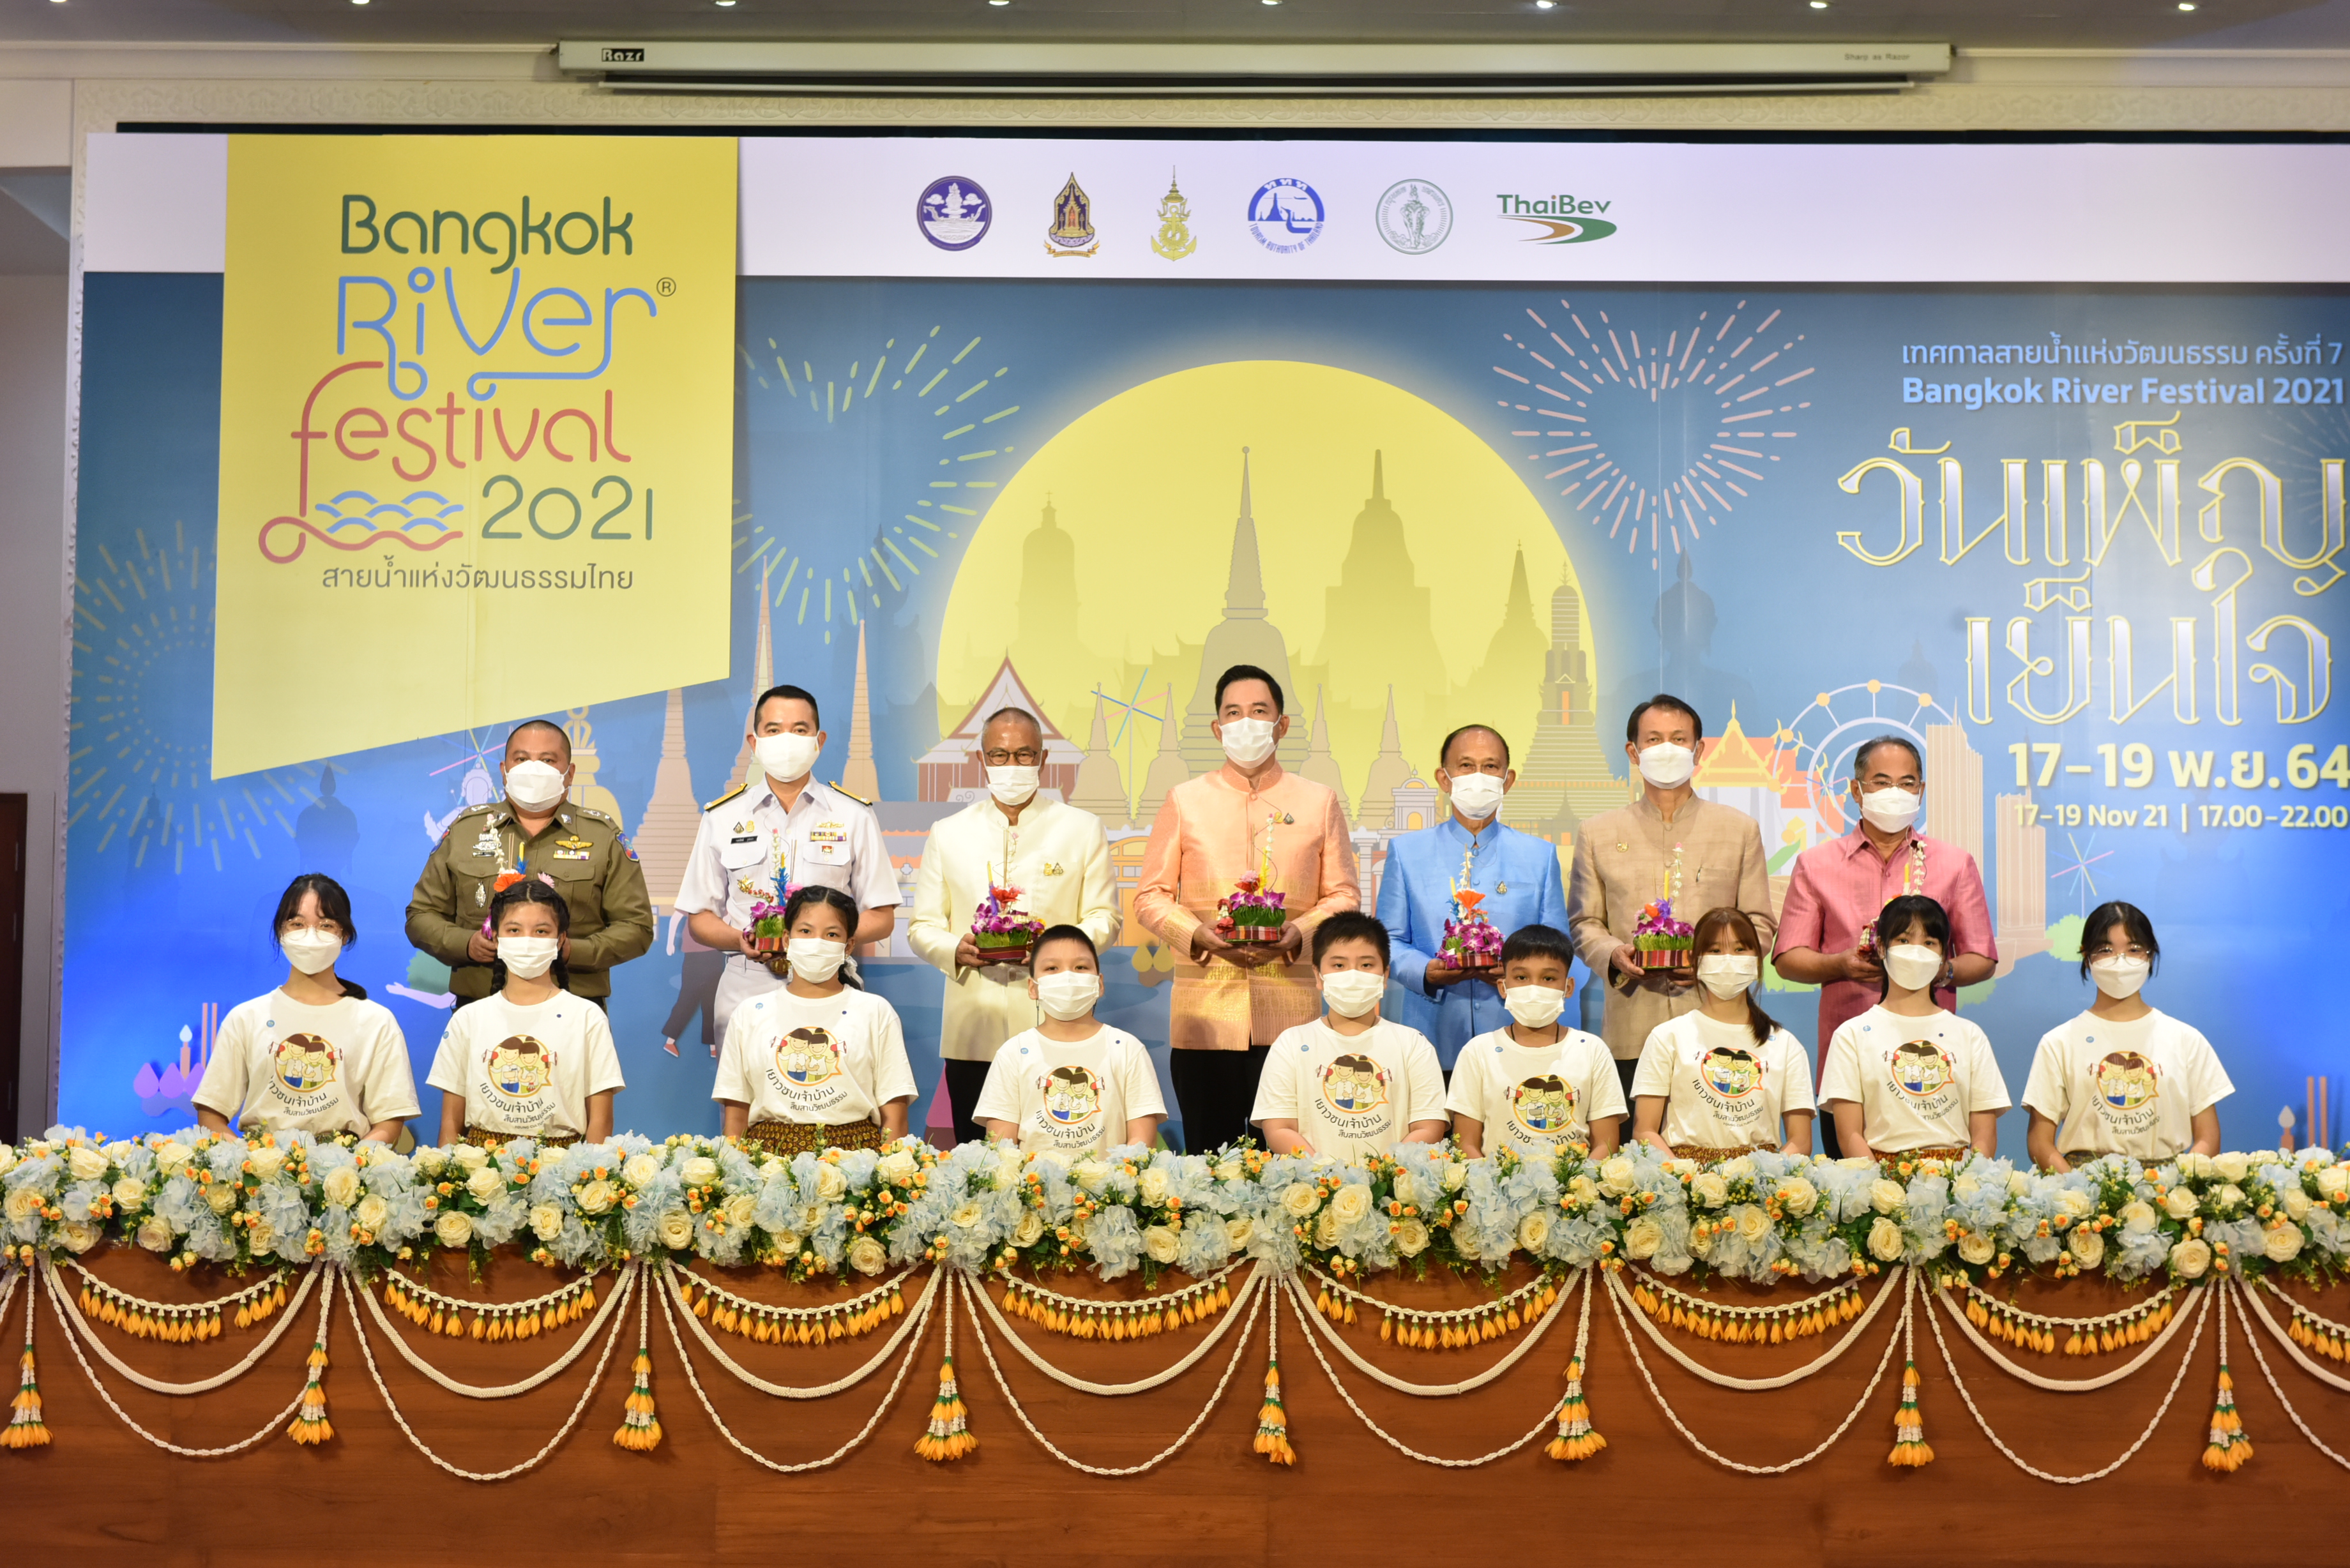 ไทยเบฟ ขานรับนโยบายเปิดประเทศ รับนักท่องเที่ยว สานต่อประเพณีอันดีงามของไทย “Bangkok River Festival 2021” ครั้งที่ 7  ชูแนวคิด “วันเพ็ญ เย็นใจ” บน 8 Landmark ริมแม่น้ำเจ้าพระยา 17-19 พ.ย. นี้ และ Lamphun River Festival ครั้งที่ 3 วันที่ 18-19 พ.ย.